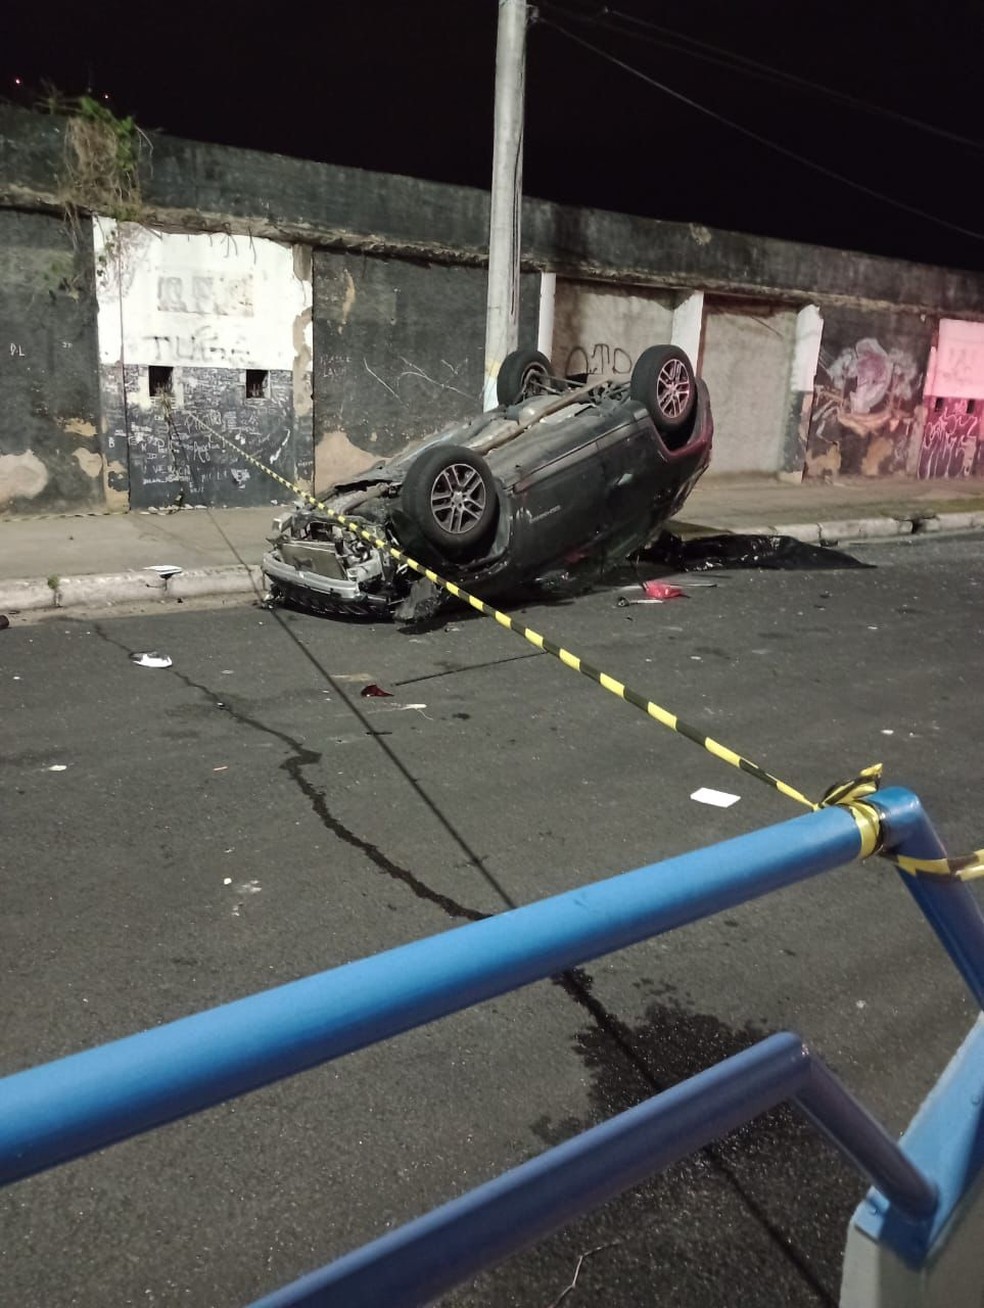 Carro despenca em ribanceira e duas mulheres são atropeladas em Nova  Friburgo – SF Notícias